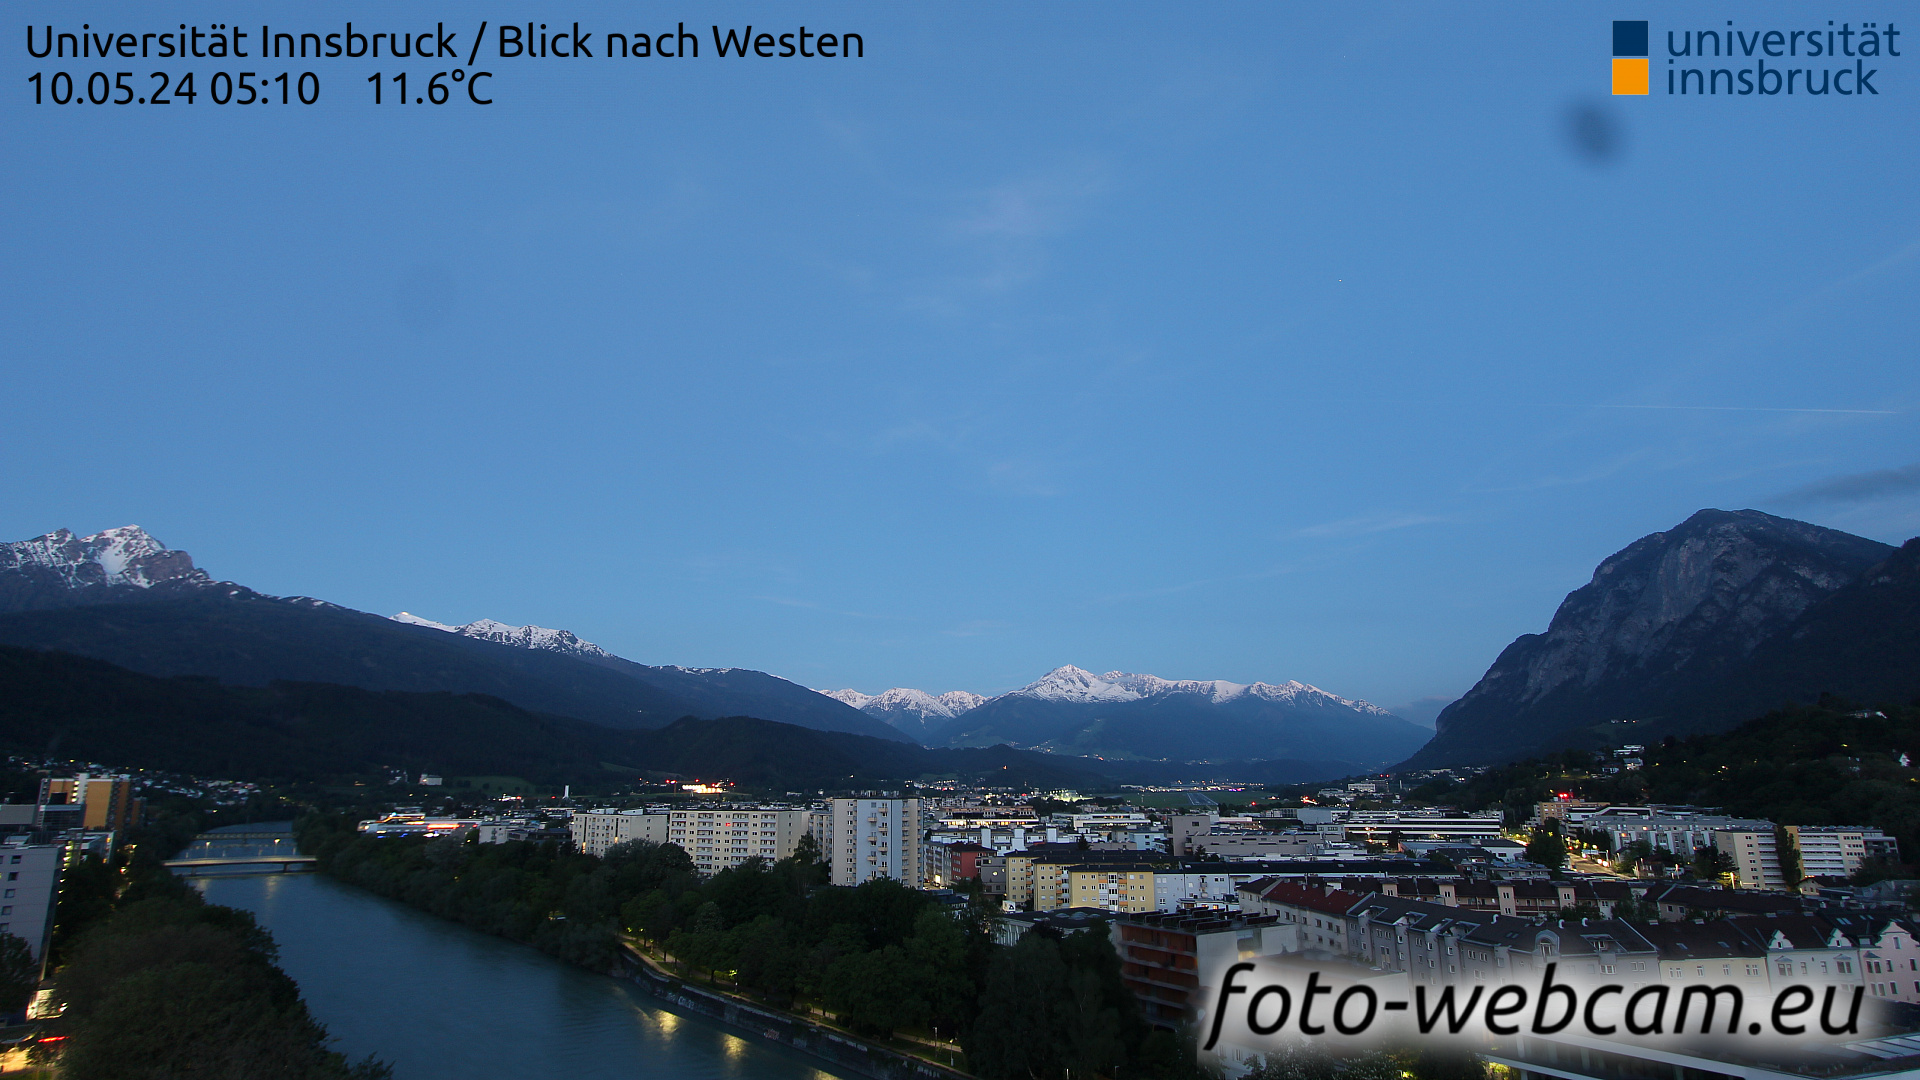 Innsbruck Lun. 05:17